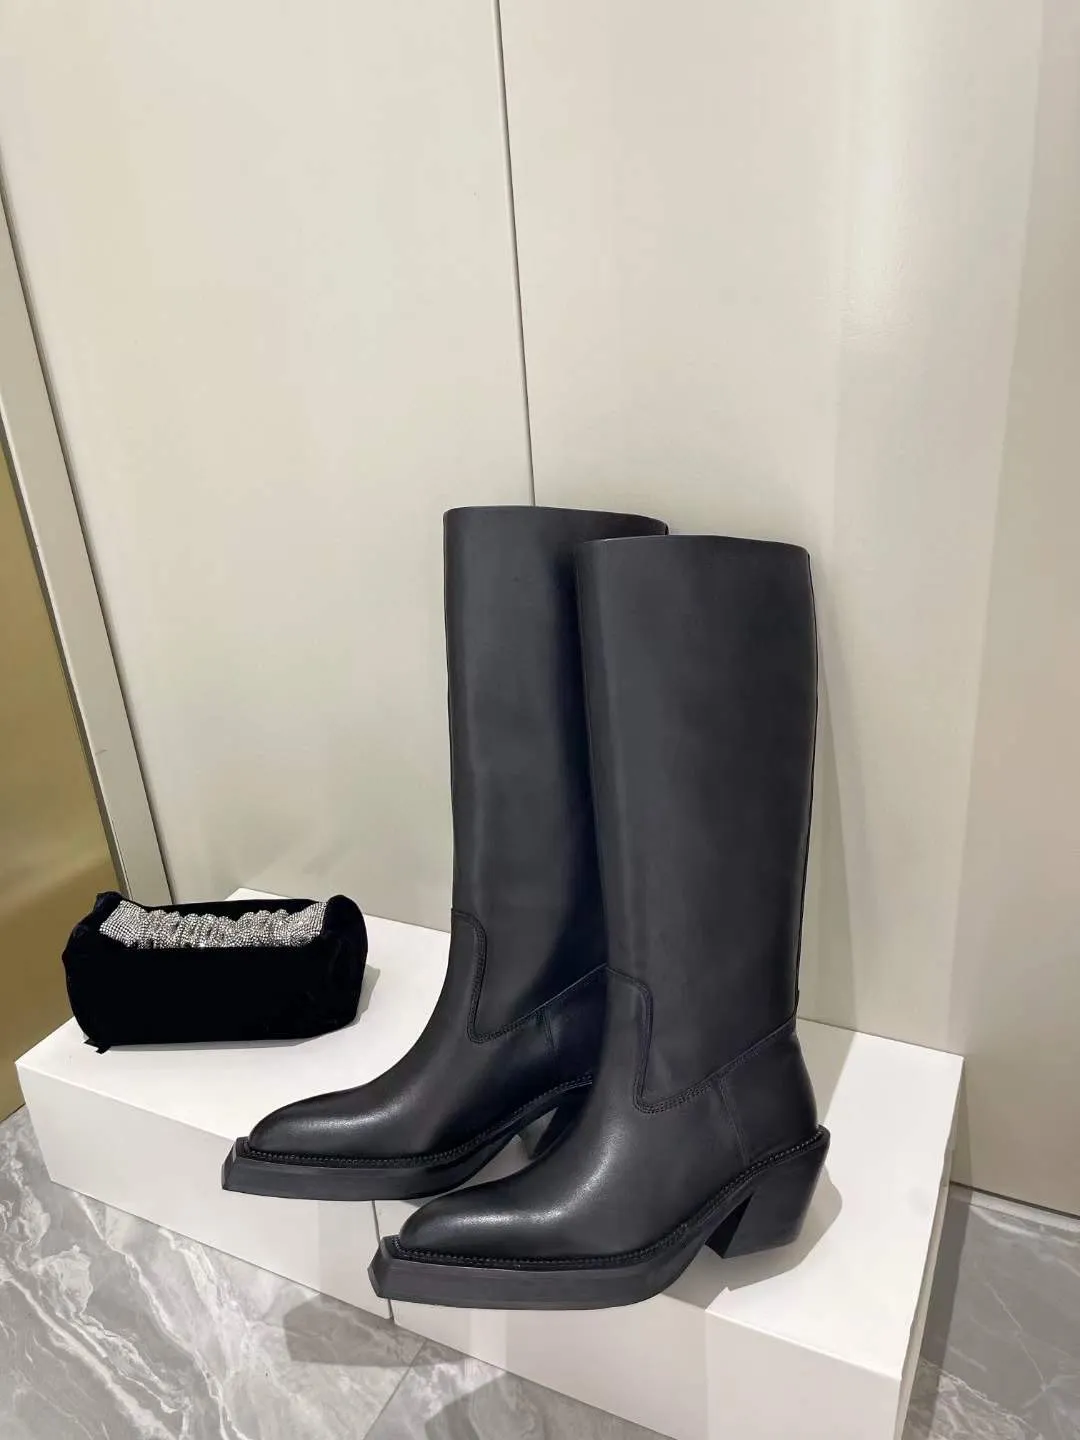 Мода Martin Designer Boots Boots Женская обувь лодыжка кармана черные римские ботинки нейлоновые военные боевые логотип небольшой большой размер евро Чунки каблук